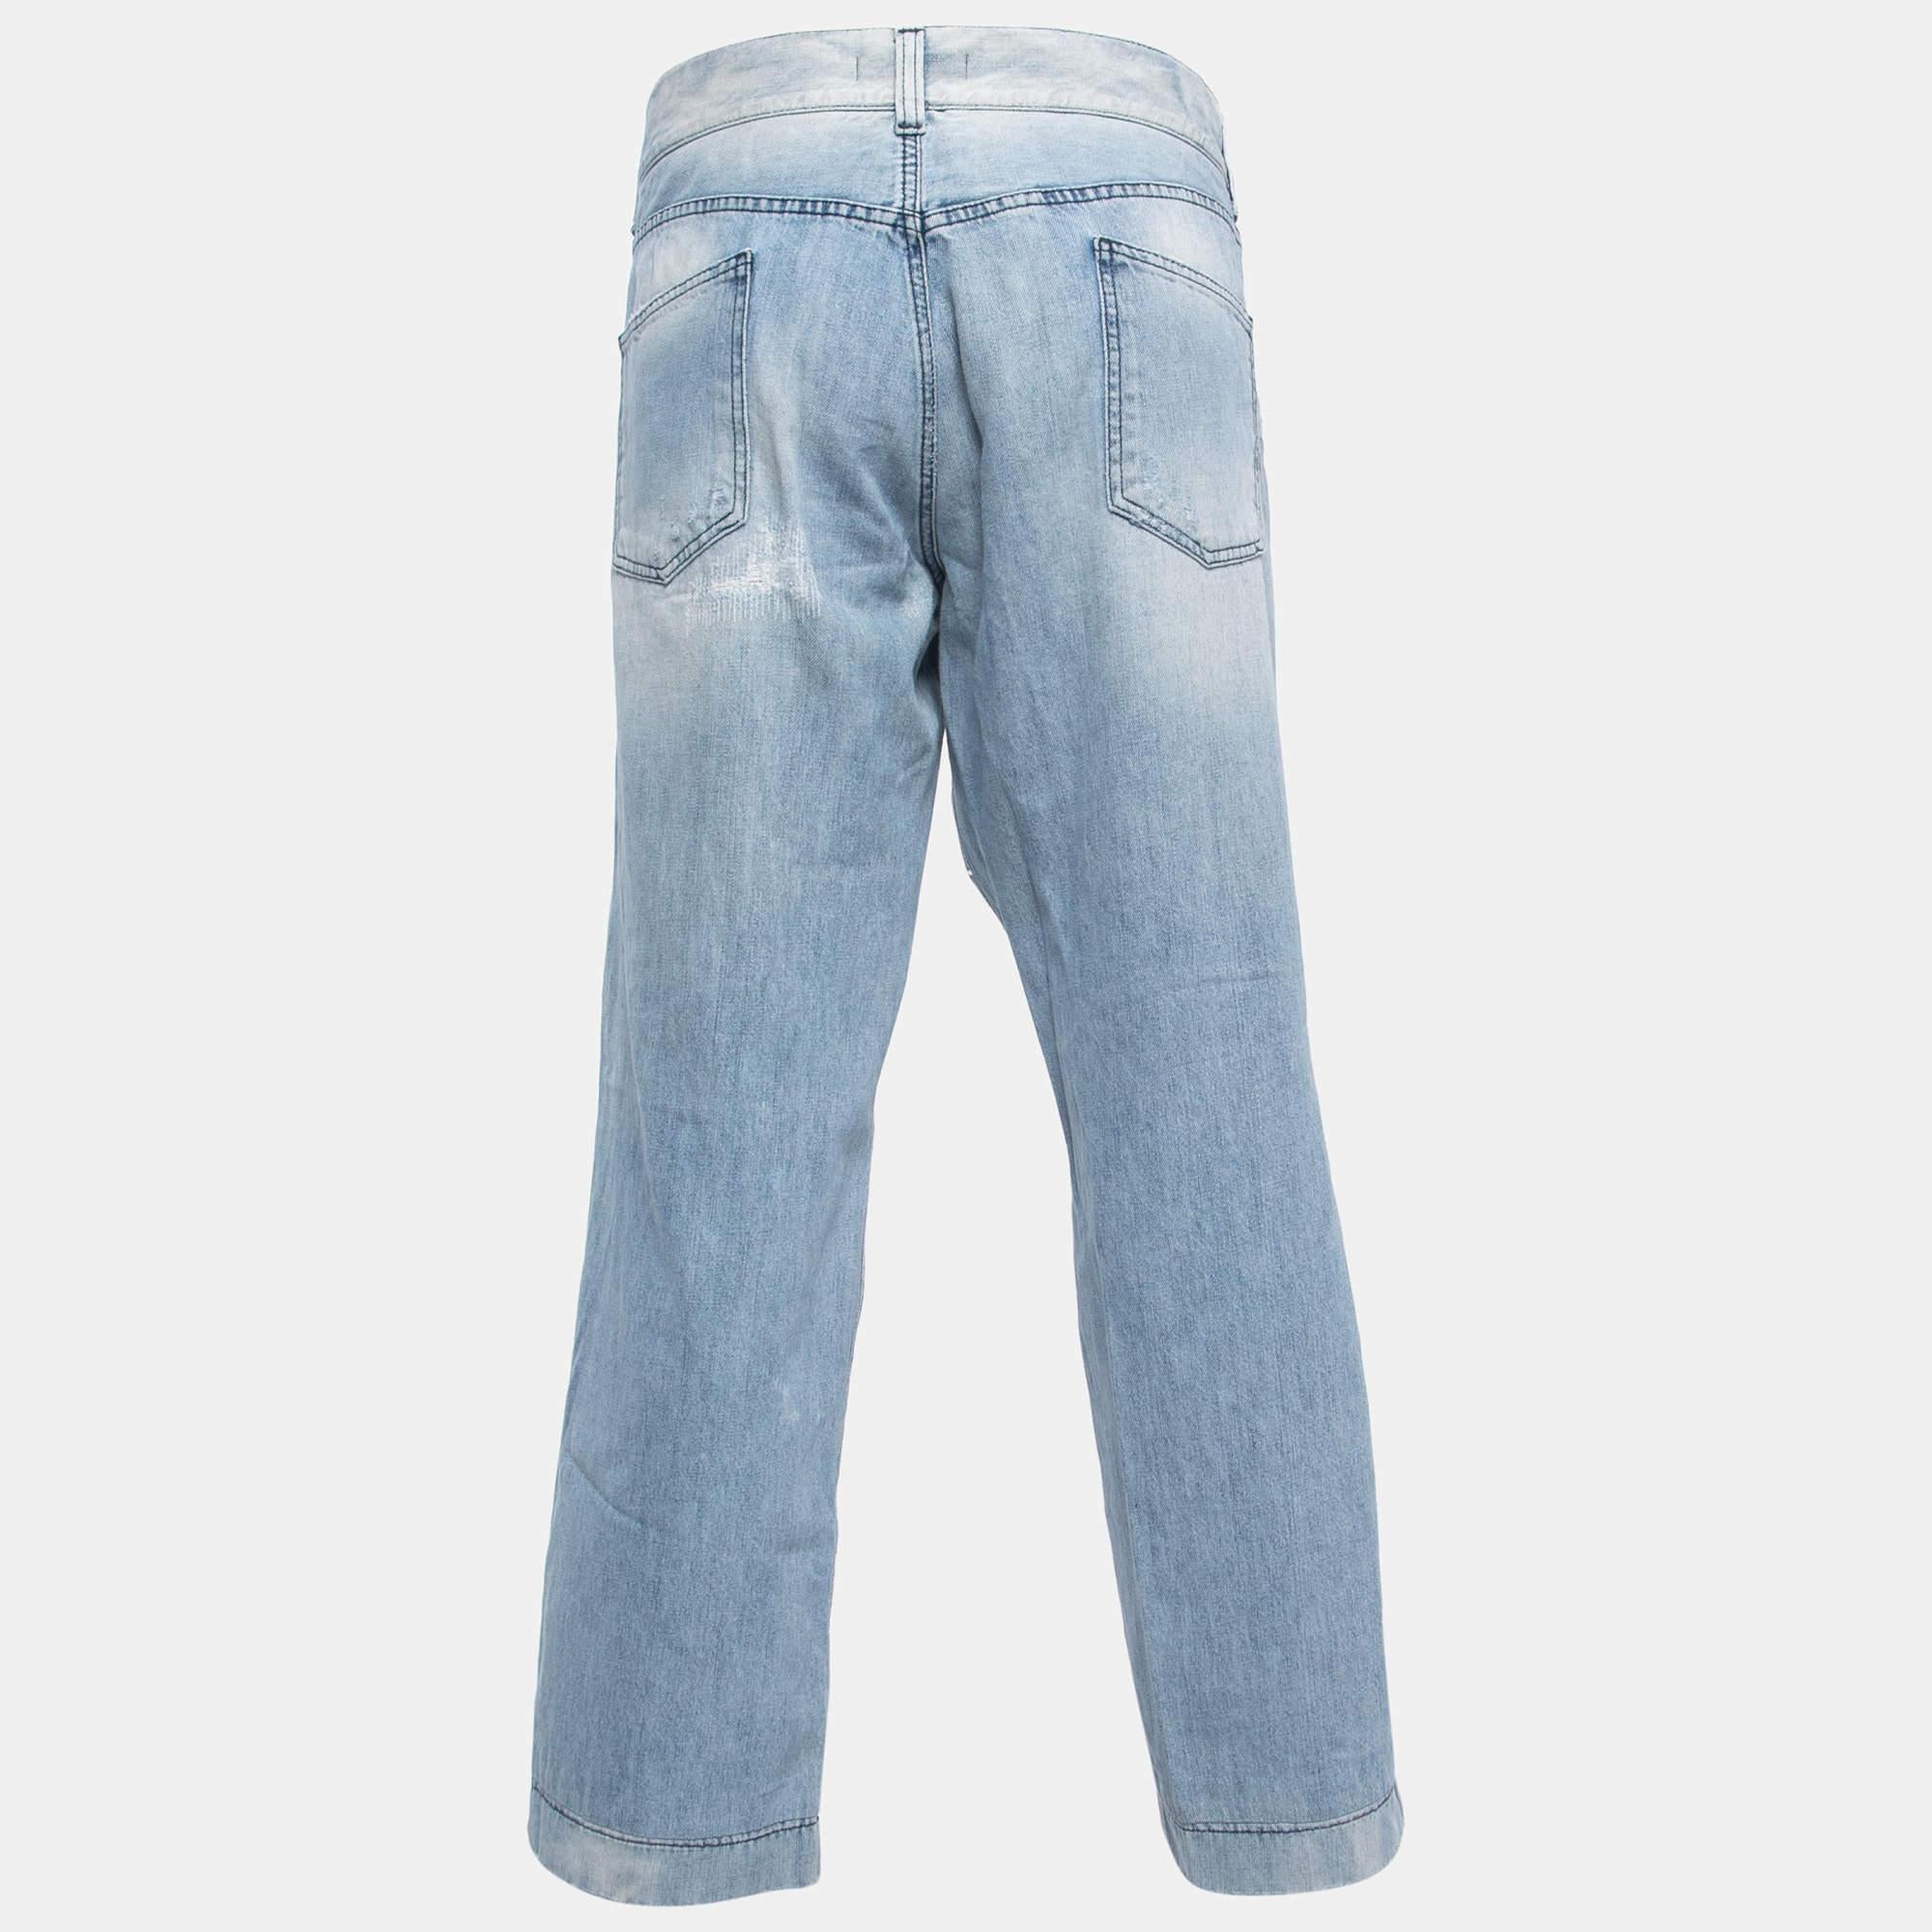 Votre garde-robe ne peut jamais être complète avec une belle paire de jeans comme celui-ci. Confectionnée dans les meilleures matières, cette paire présente des détails classiques, une fermeture facile et des poches. Associez-le à vos t-shirts